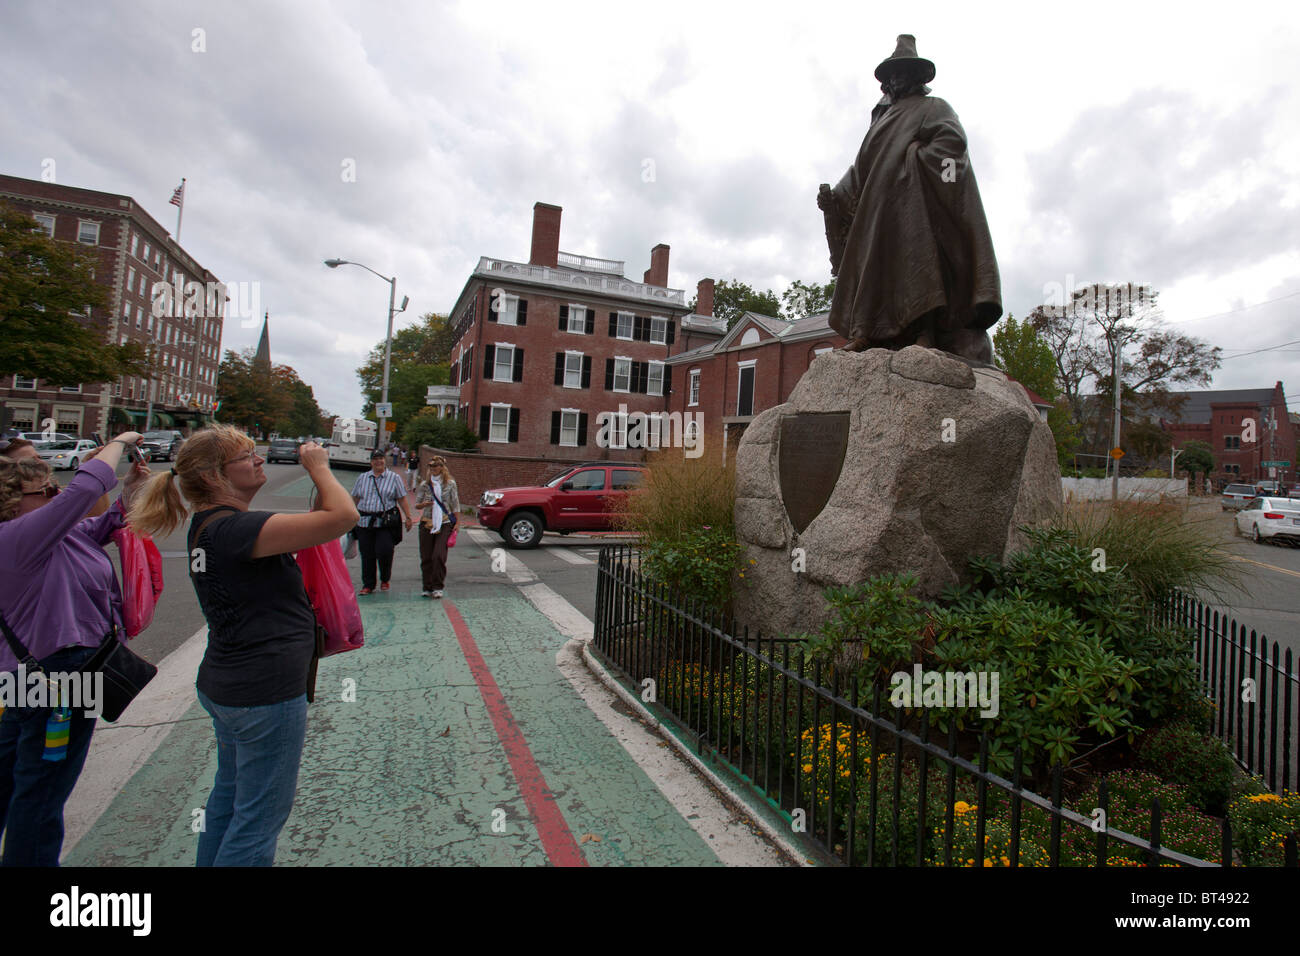 Touristen nehmen Fotos von einer Statue von Roger Conant in Robe & Zylinderhut, Salem, Massachusetts, Vereinigte Staaten von Amerika gekleidet Stockfoto